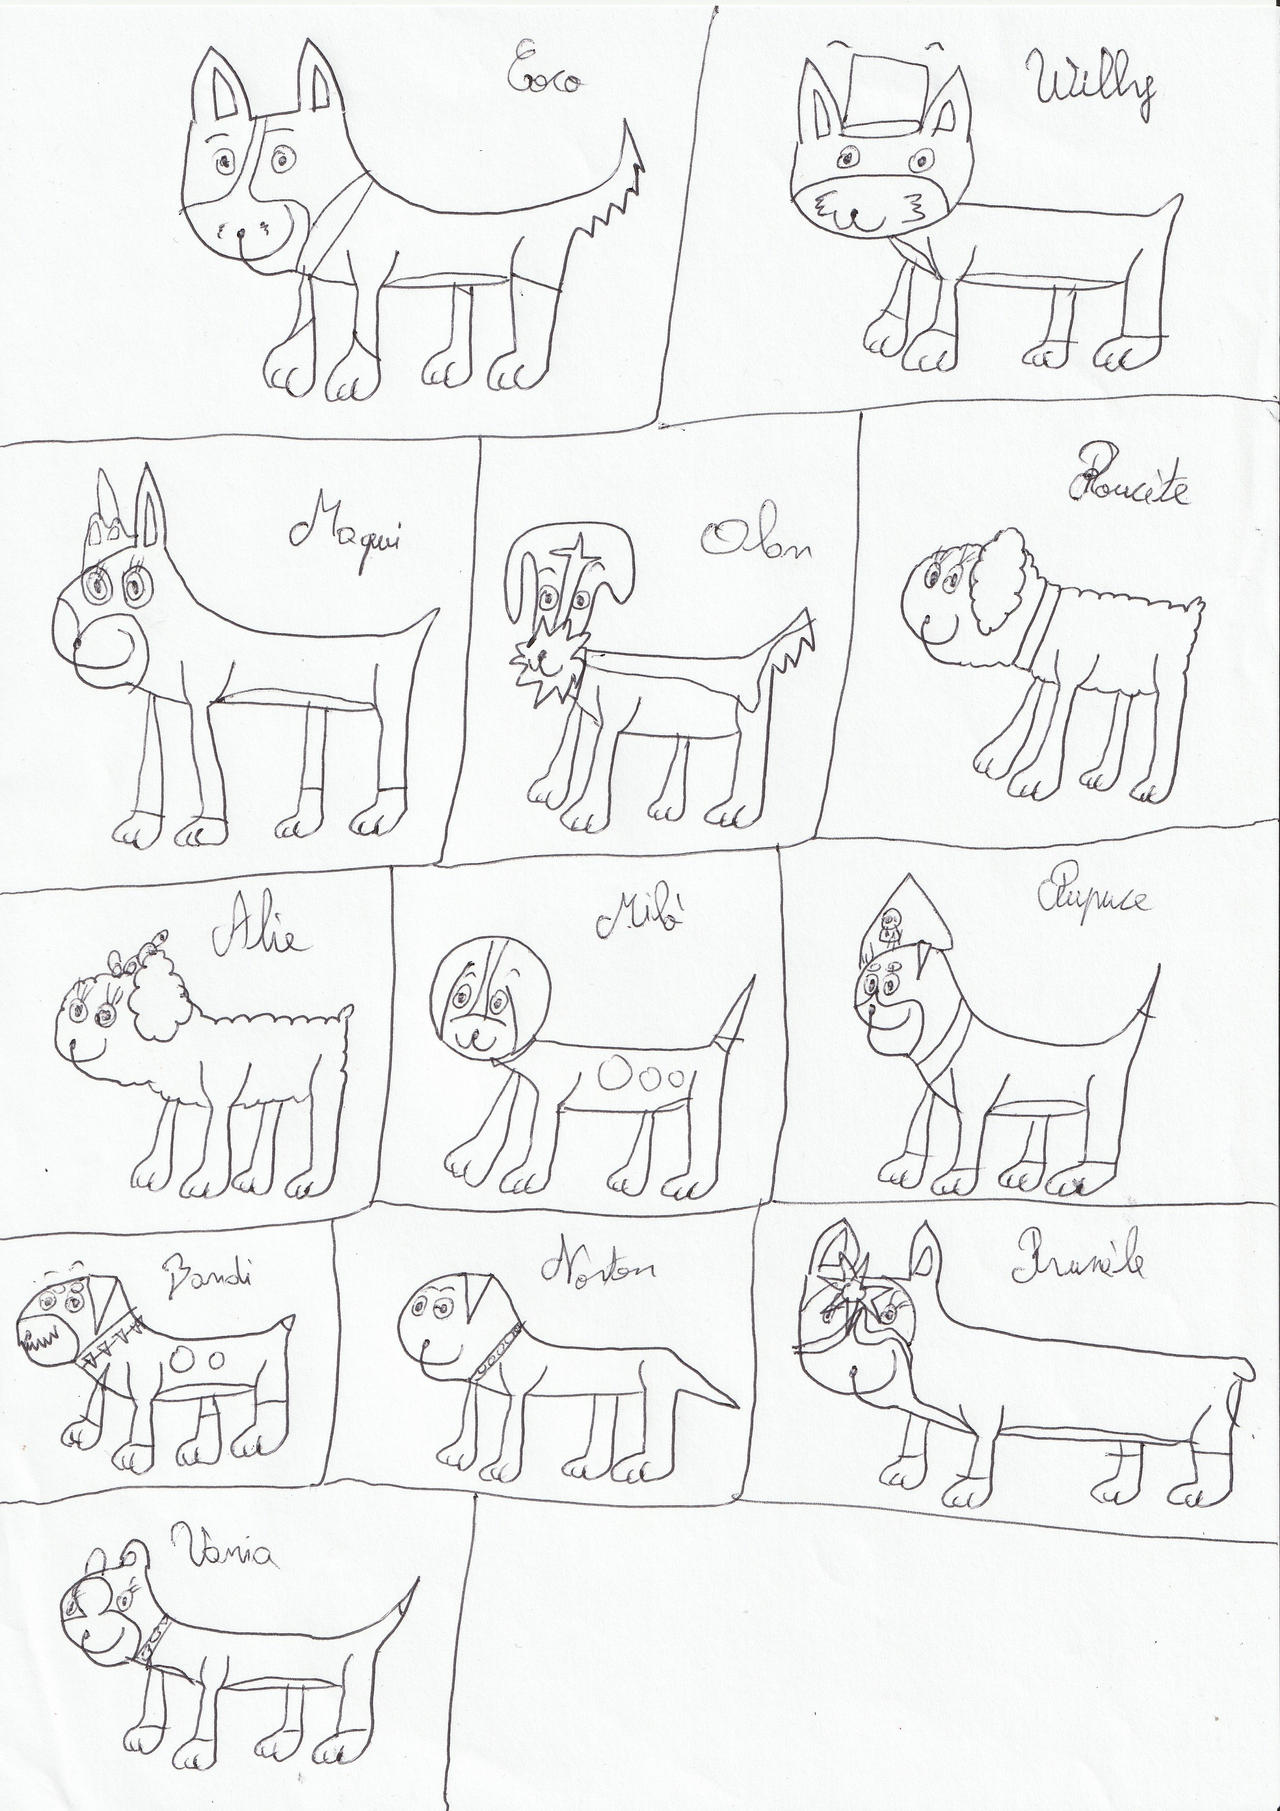 Mes dix mille BDs (et ma galerie) - Page 2 Old_drawings_of_some_dogs_characters_by_eevee33_dej6qxy-fullview.jpg?token=eyJ0eXAiOiJKV1QiLCJhbGciOiJIUzI1NiJ9.eyJzdWIiOiJ1cm46YXBwOjdlMGQxODg5ODIyNjQzNzNhNWYwZDQxNWVhMGQyNmUwIiwiaXNzIjoidXJuOmFwcDo3ZTBkMTg4OTgyMjY0MzczYTVmMGQ0MTVlYTBkMjZlMCIsIm9iaiI6W1t7ImhlaWdodCI6Ijw9MTgxMSIsInBhdGgiOiJcL2ZcLzYyZjQ5MmJiLWM1ODEtNGY5MC1iMWJhLTIxMWRmNjNhOGIwYlwvZGVqNnF4eS0zM2MzNGY1ZC1jYTcwLTRkYjgtYTVhMC00YjgxYmIzZTY2ZDcuanBnIiwid2lkdGgiOiI8PTEyODAifV1dLCJhdWQiOlsidXJuOnNlcnZpY2U6aW1hZ2Uub3BlcmF0aW9ucyJdfQ